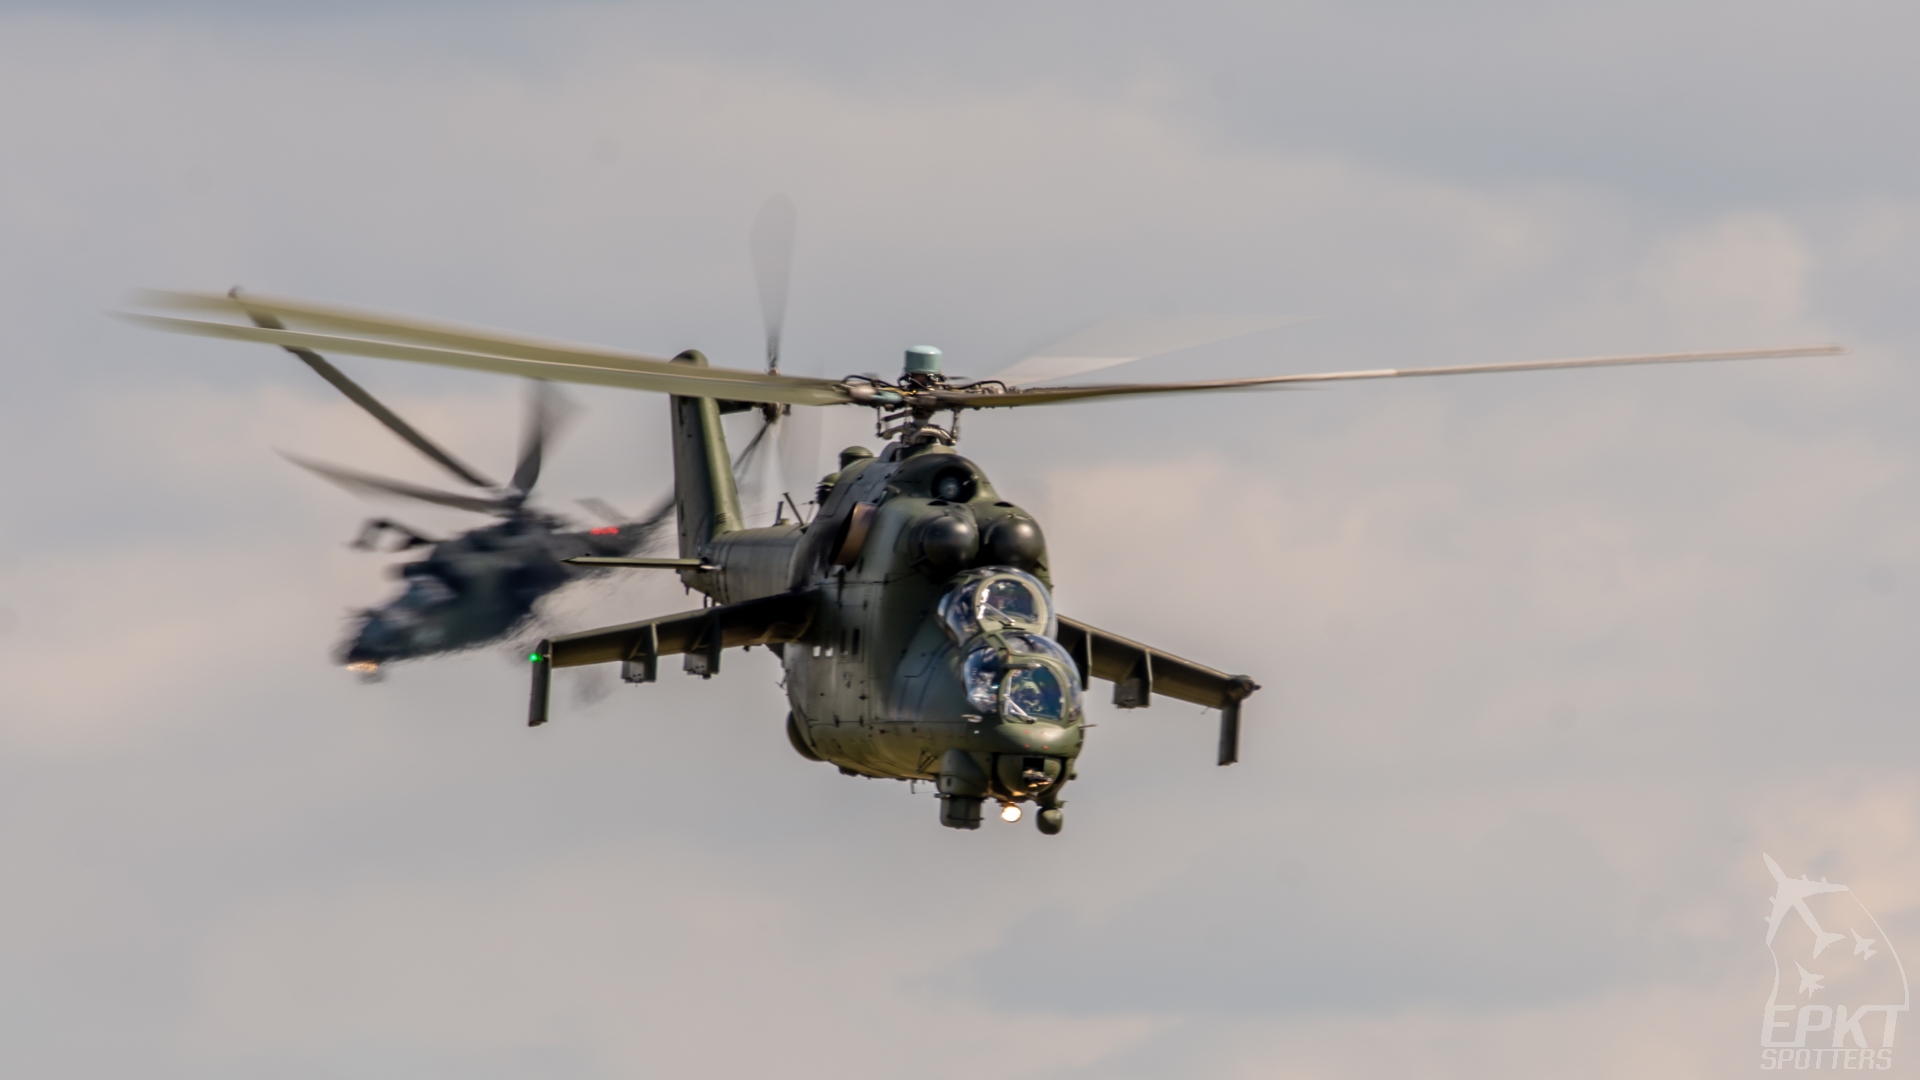 736 - Mil Mi-24 V Hind E (Poland - Army) / Nowy Targ - Nowy Targ Poland [EPNT/]